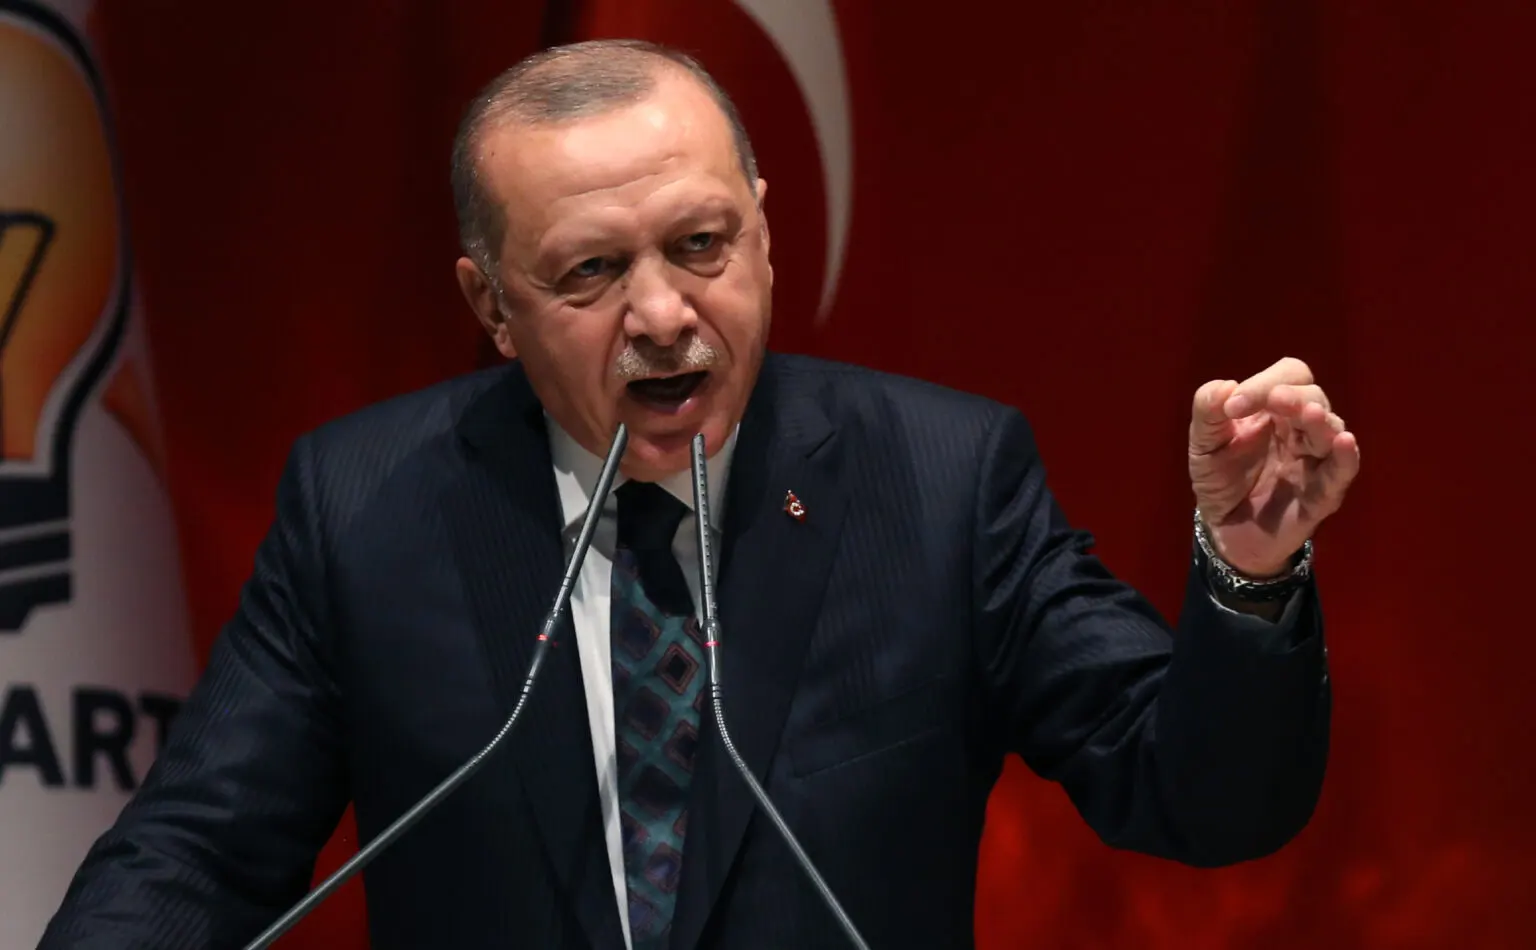 Турция ввела ограничения на экспорт товаров в Израиль